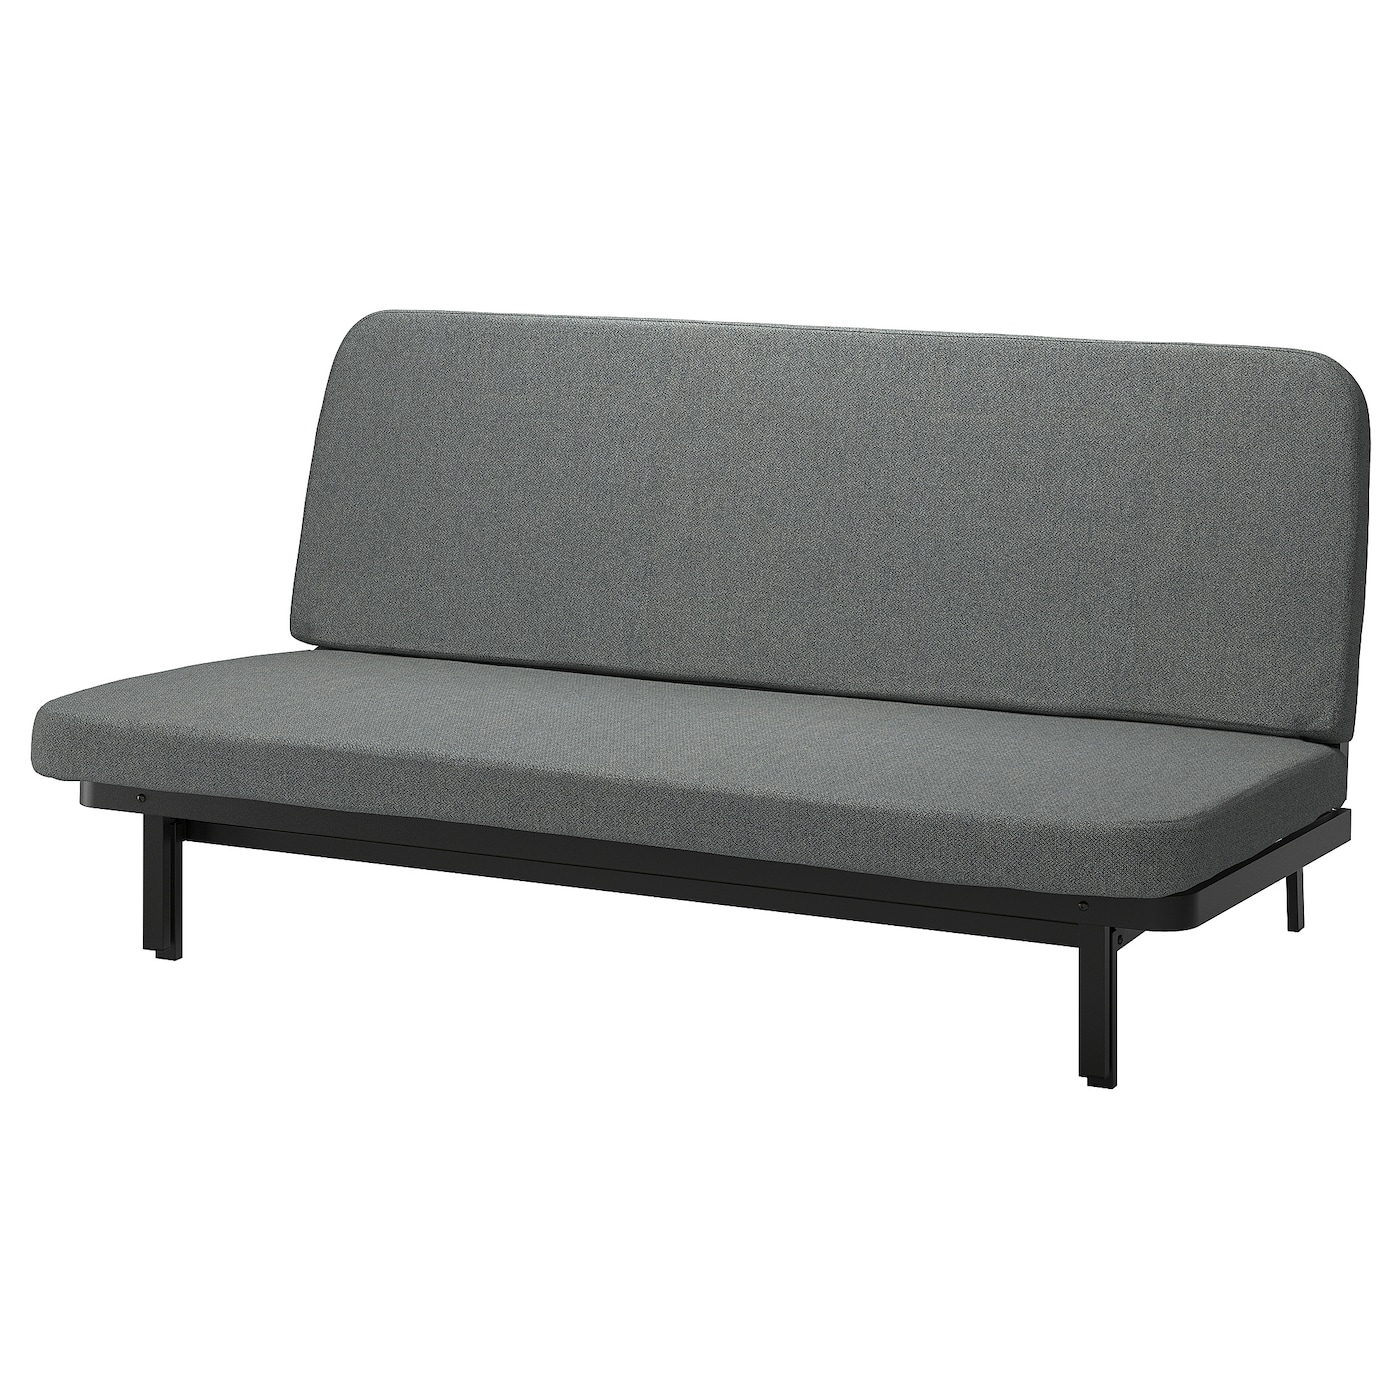 NYHAMN 3-местный диван-кровать, поролоновый матрас в комплекте/Скартофт черный/светло-серый IKEA диван кровать малютка черный